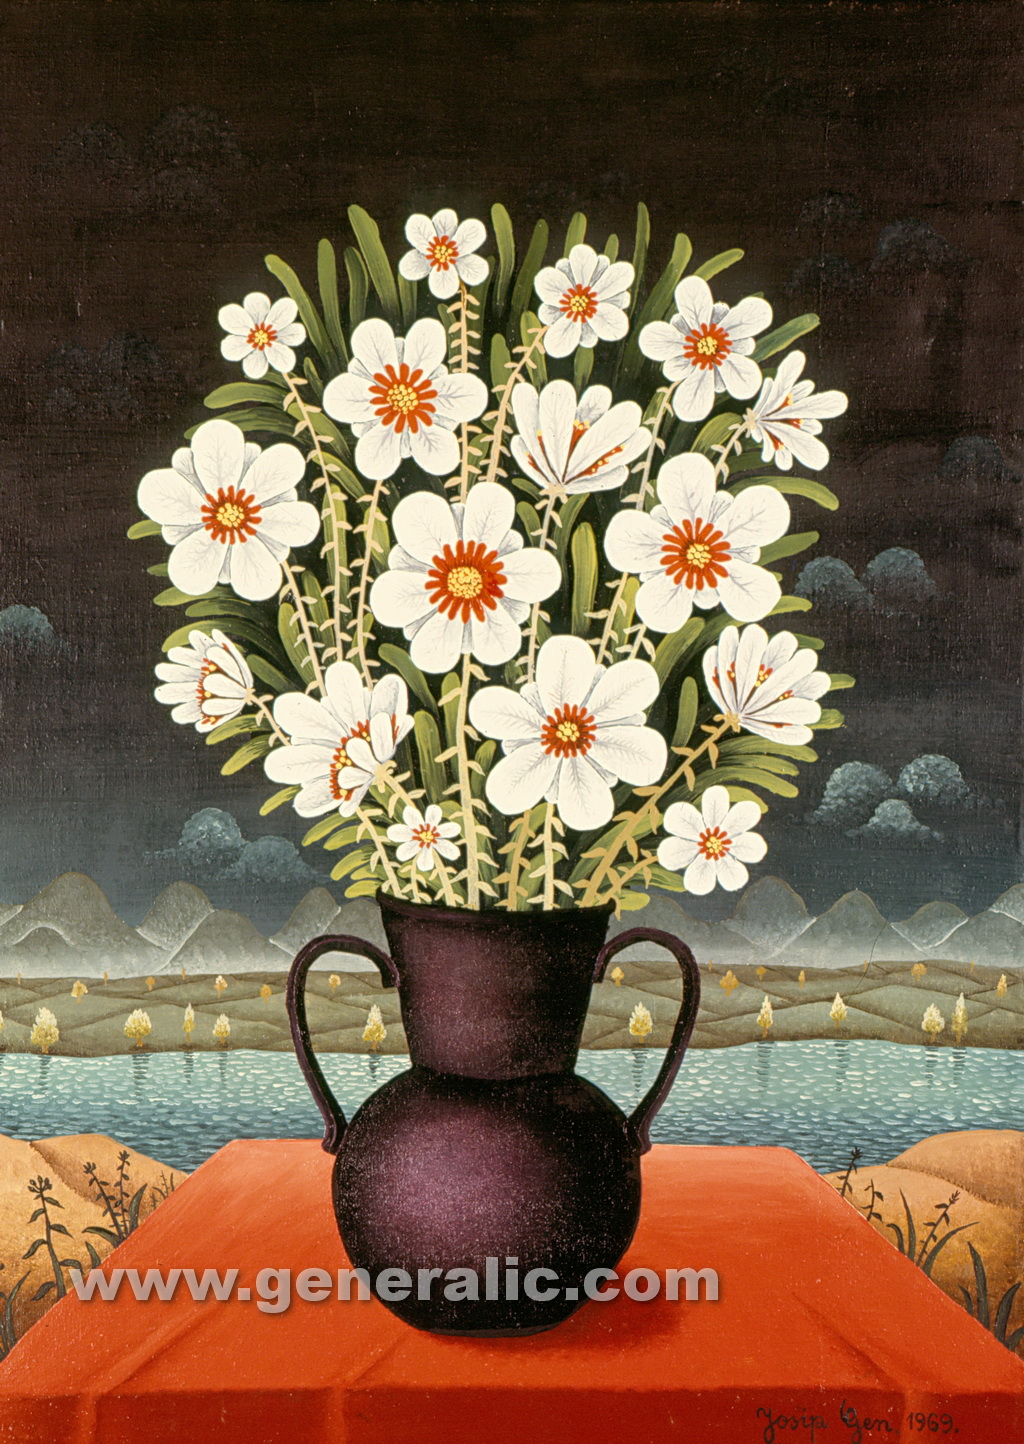 Josip Generalic, 1969, Flowers, oil on canvas